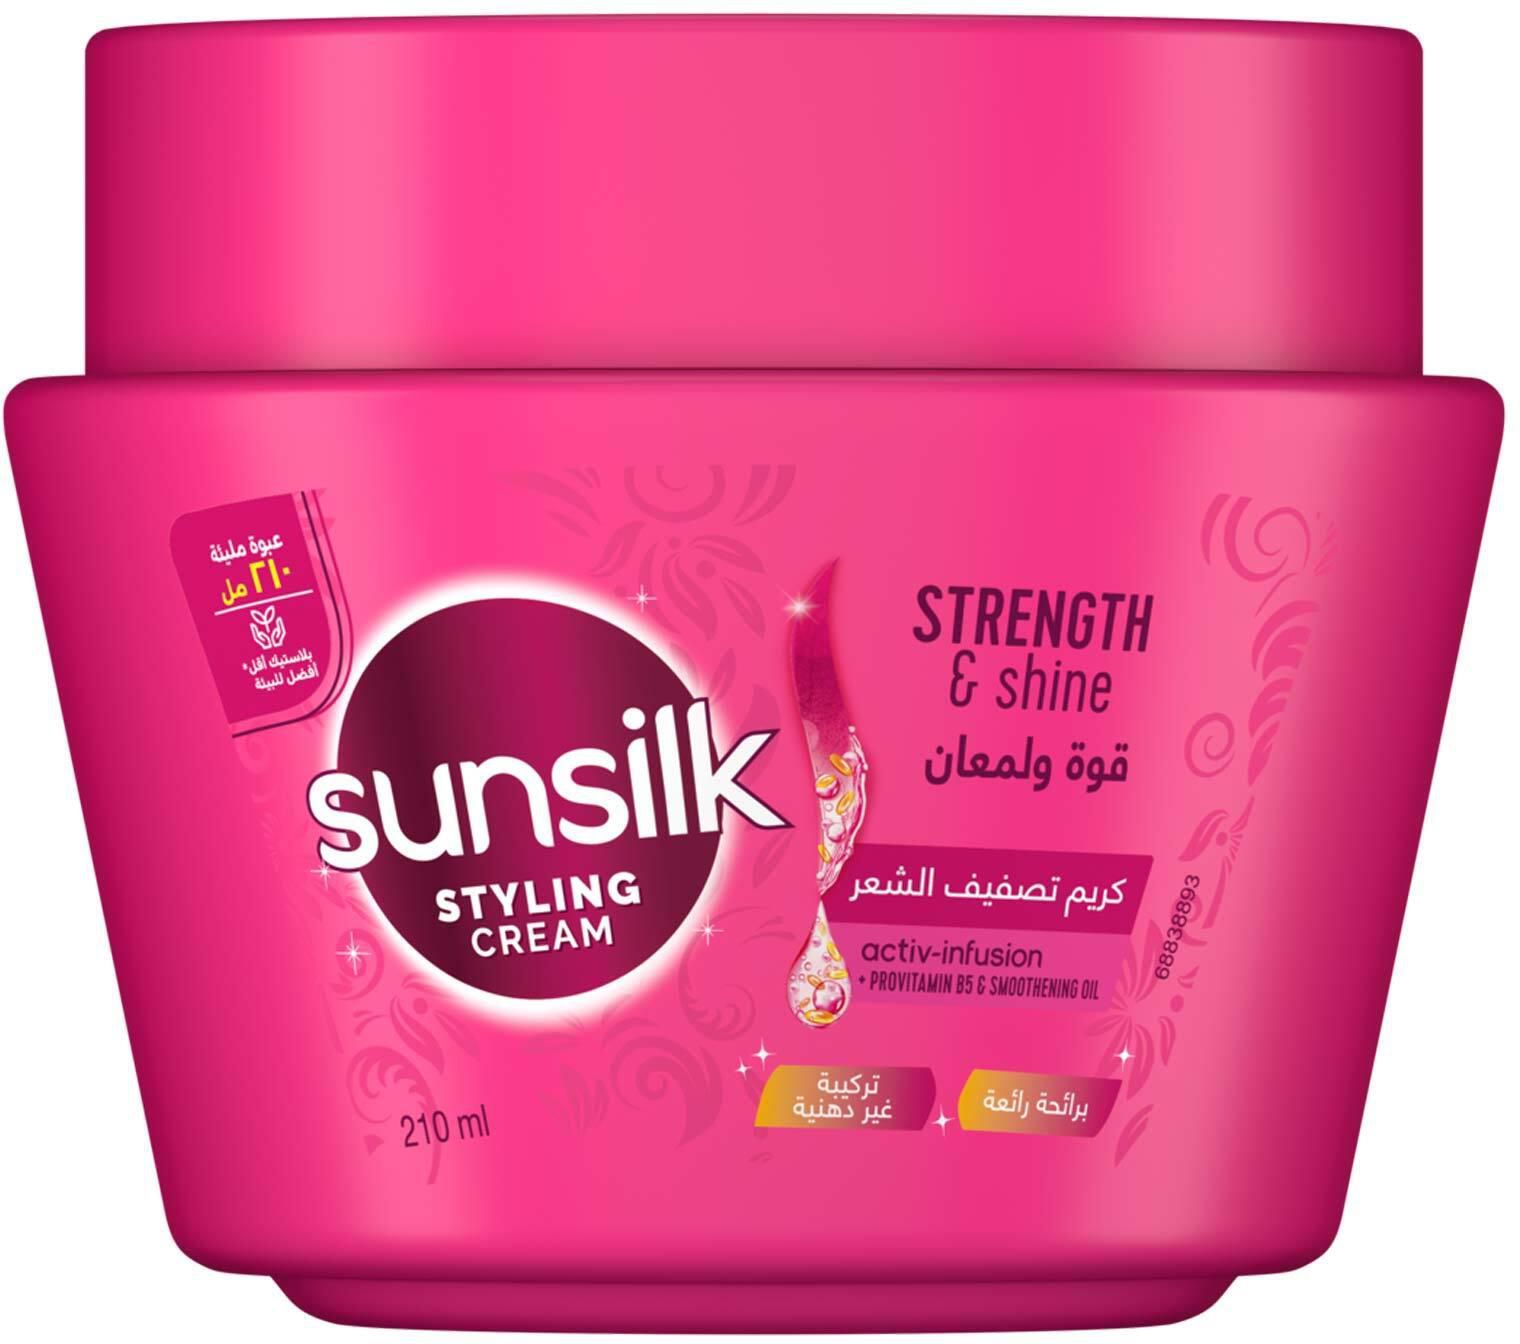 Sunsilk Styling Cream - Strength and Shine - 210ml